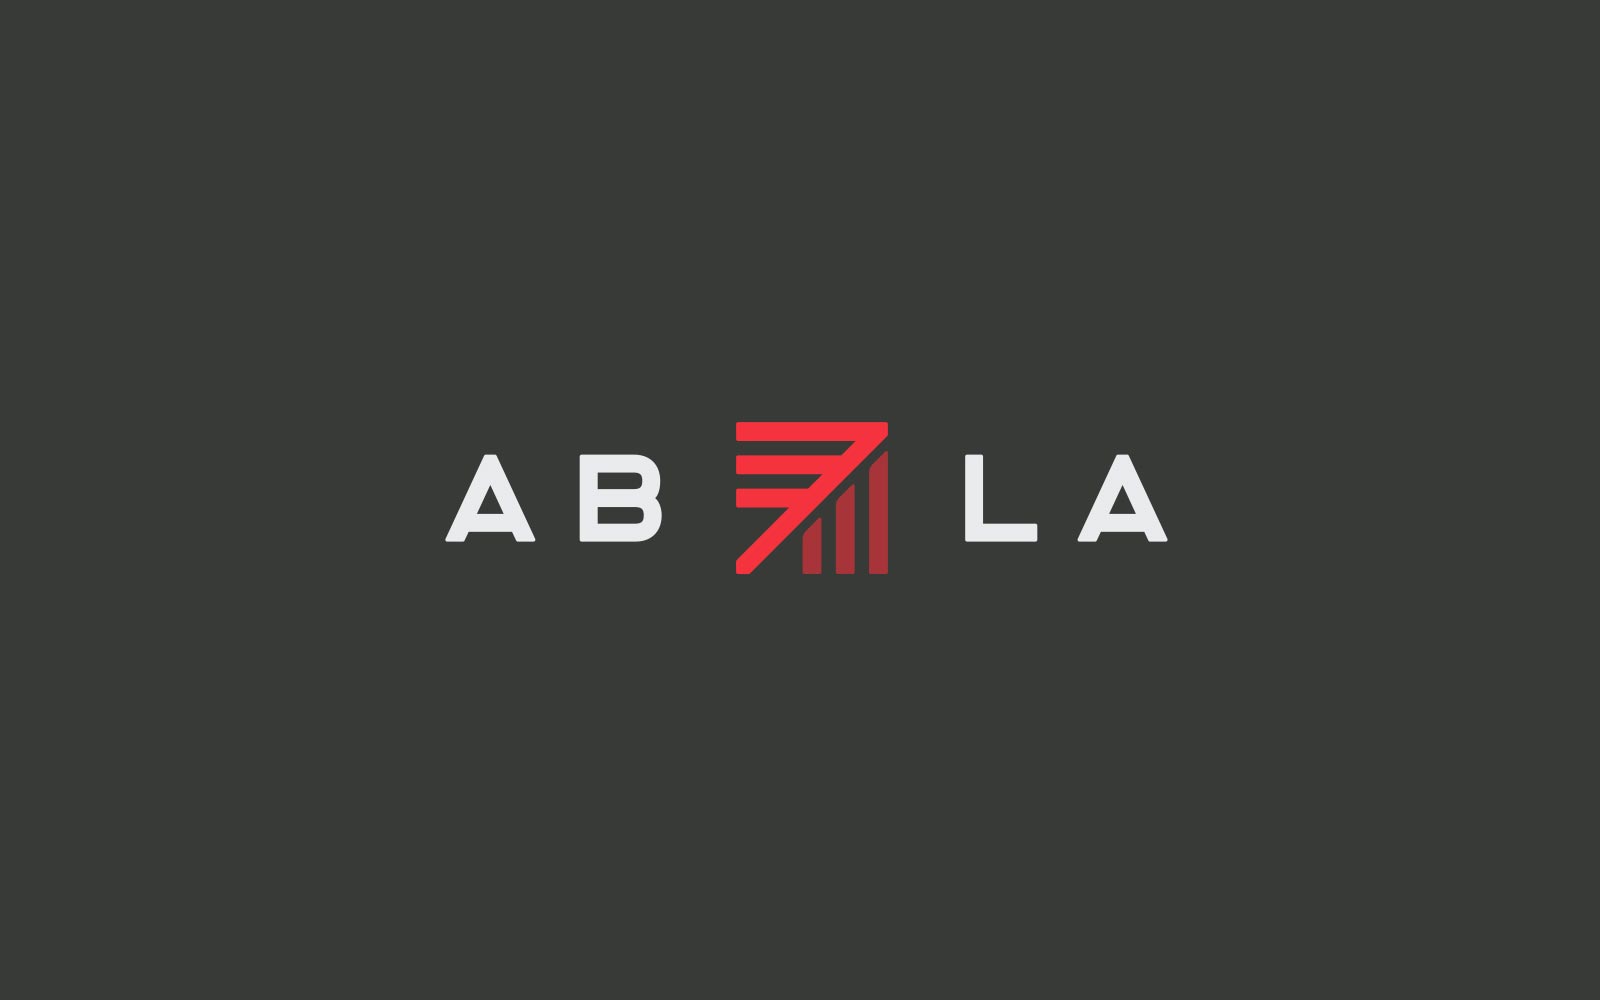 ABLA Logo Kitchen Sink